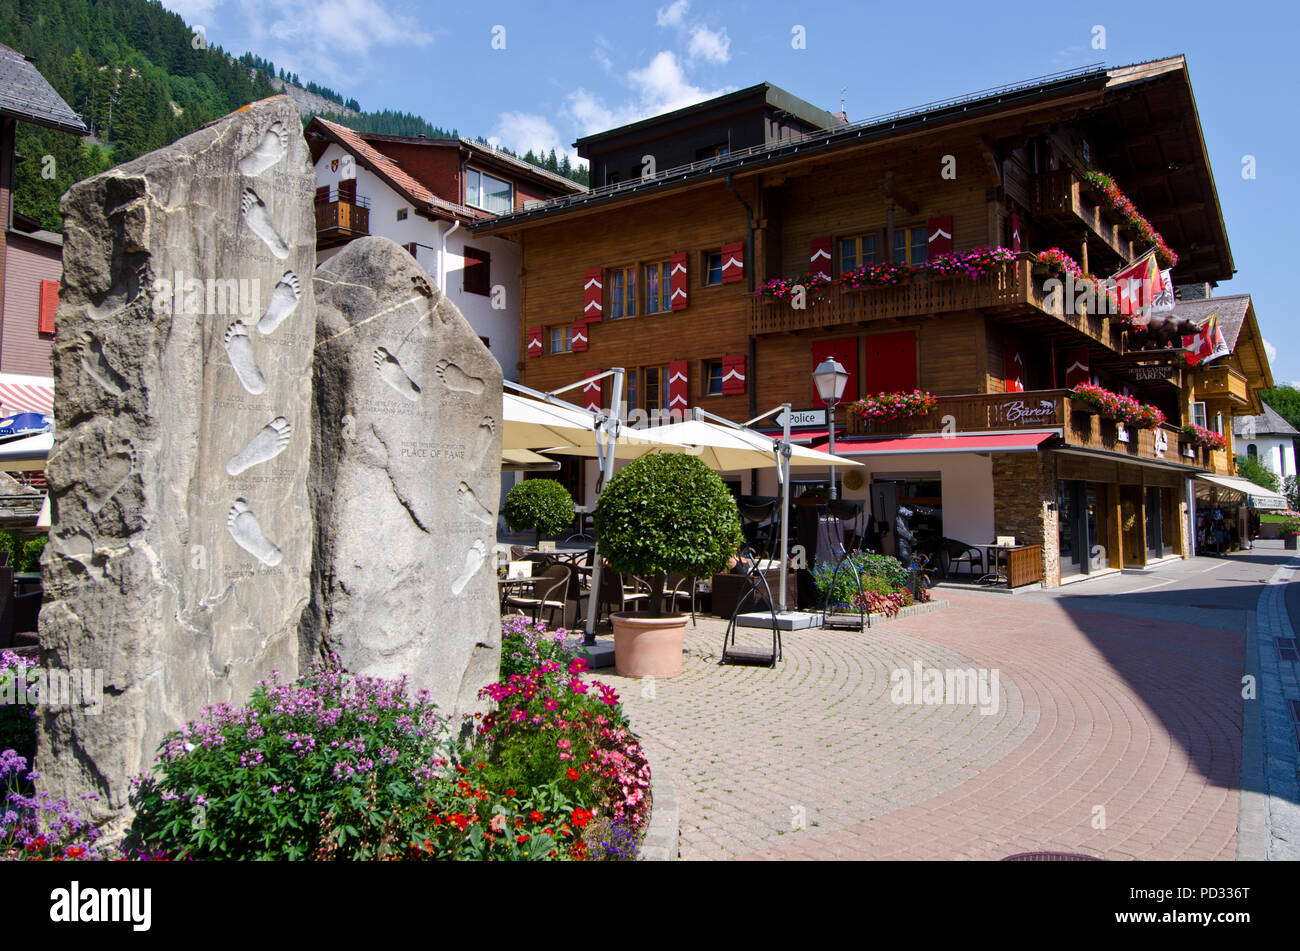 Ferienort Adelboden, Skulptur mit Spuren von Weltcup Ski Champions bei den Rennen Adelboden, Berner Alpen, Schweiz Stockfoto